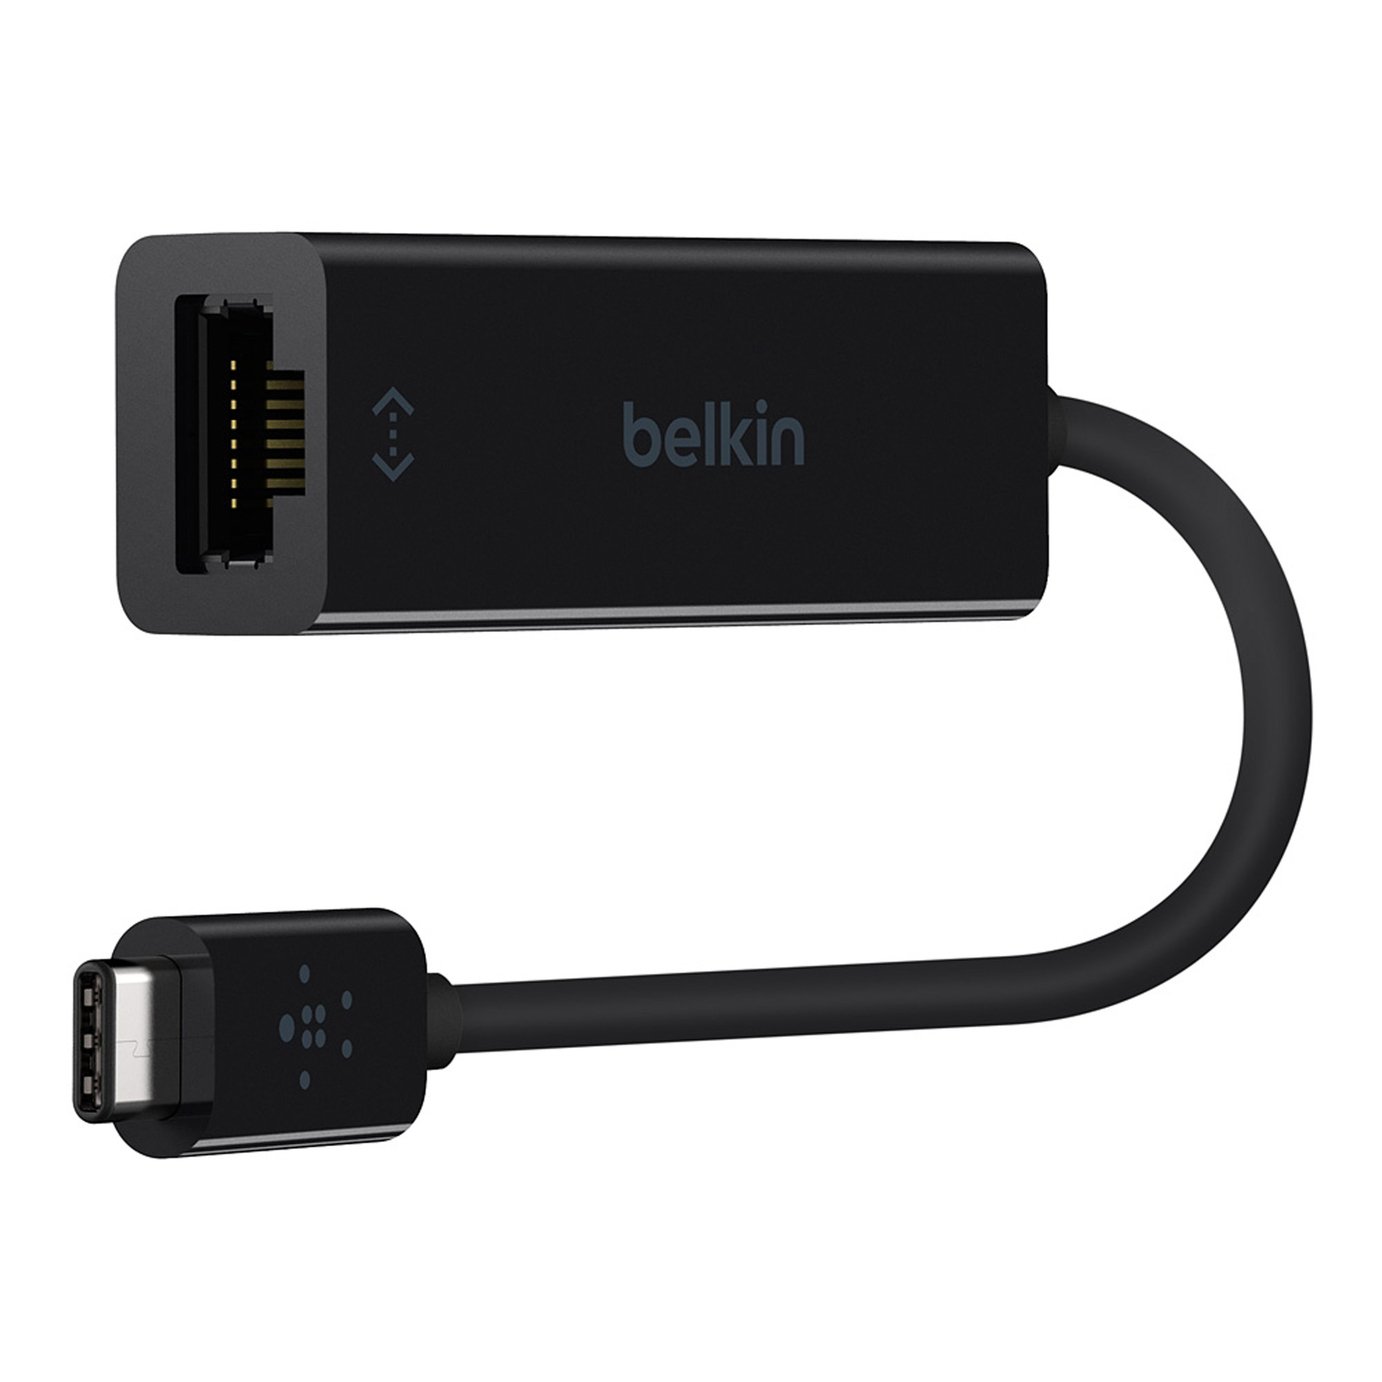 Belkin USB-C to Gigabit Ethernet Adapter - Black